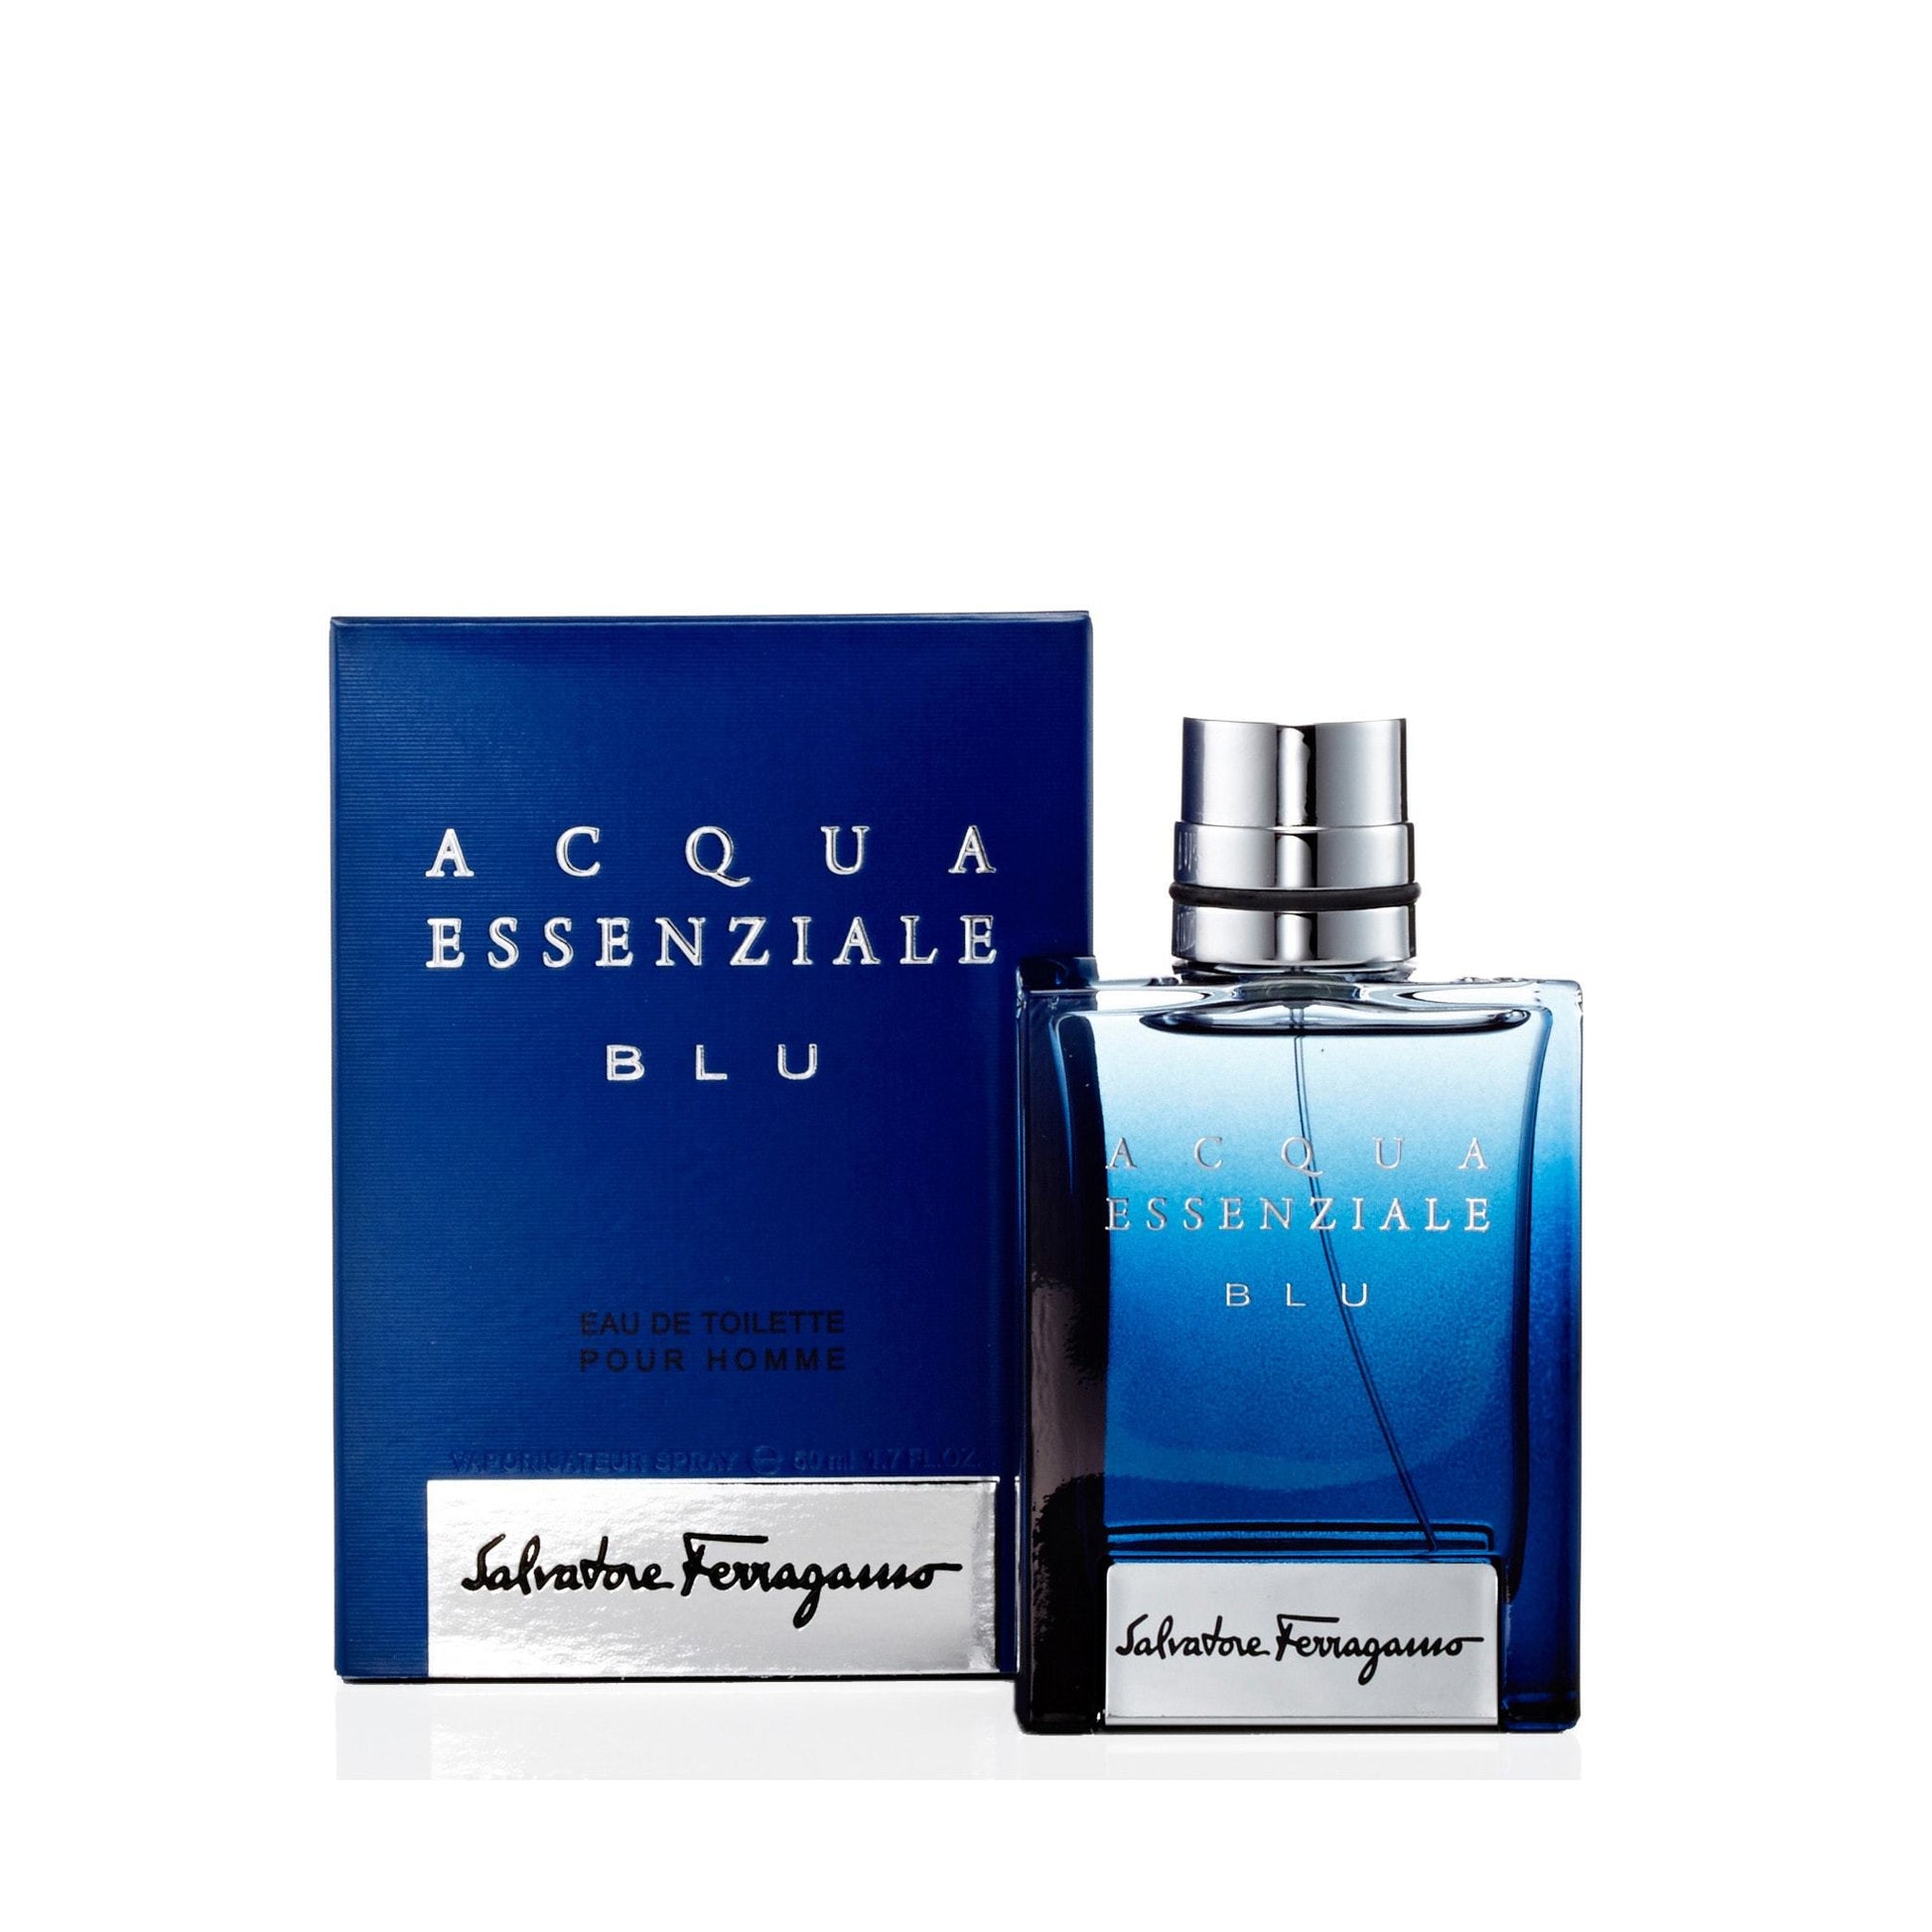 Acqua Essenziale Blu Eau de Toilette Spray for Men by Ferragamo, Product image 1